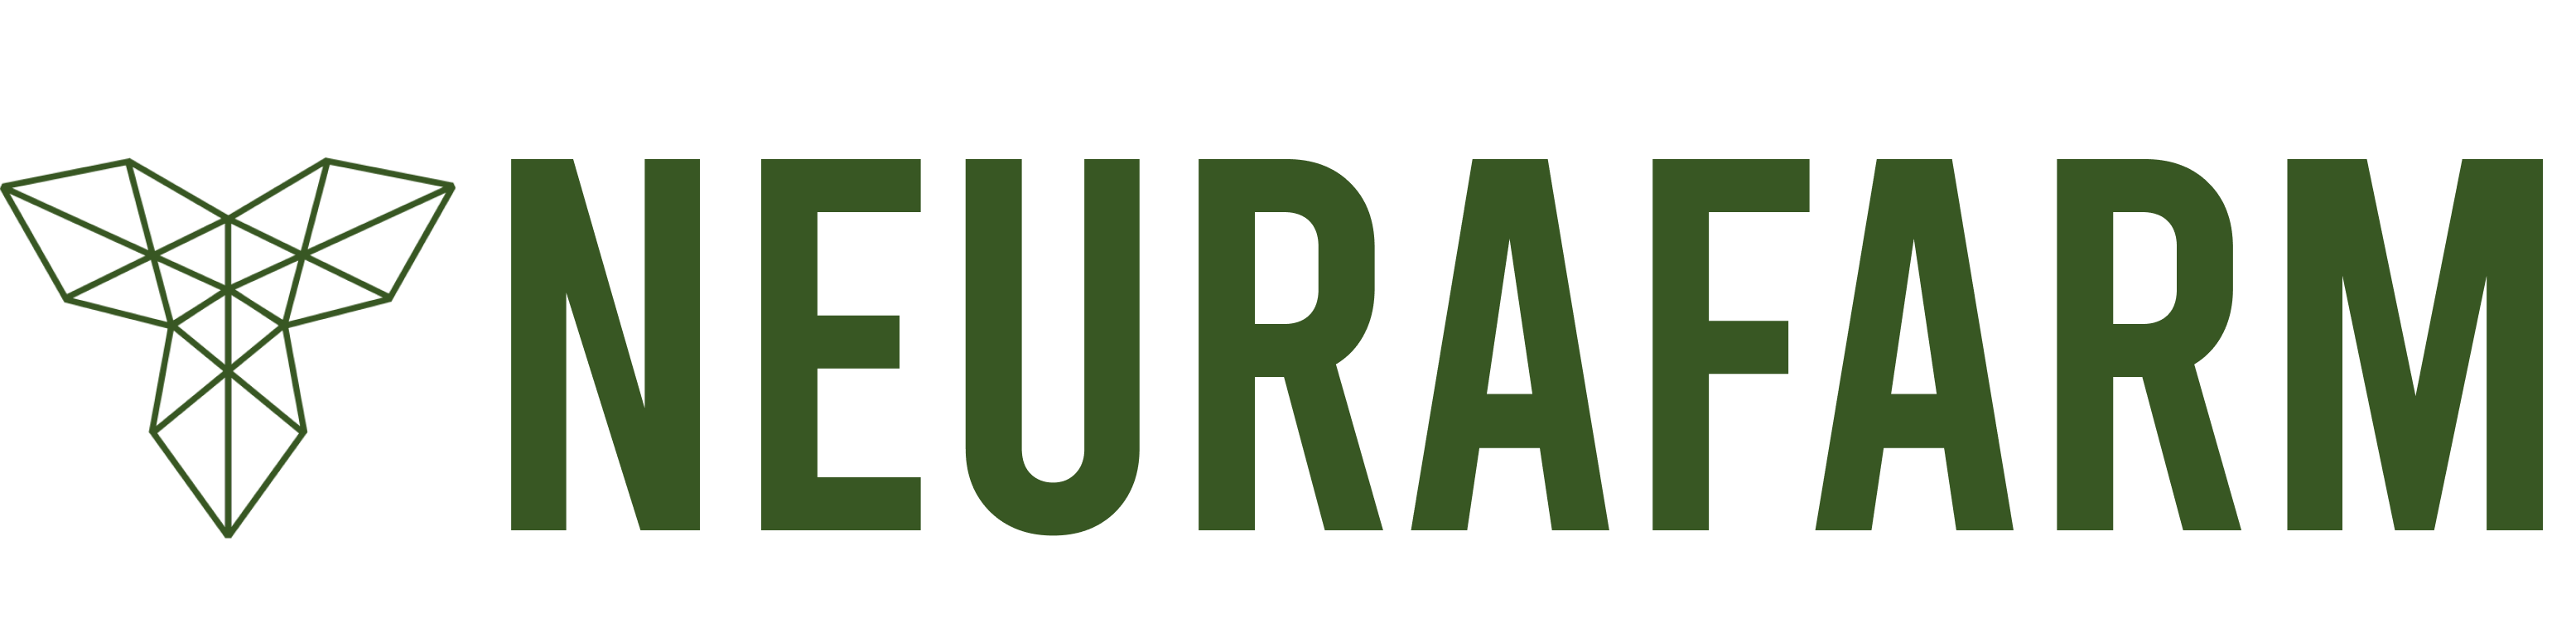 neurafarm-logo